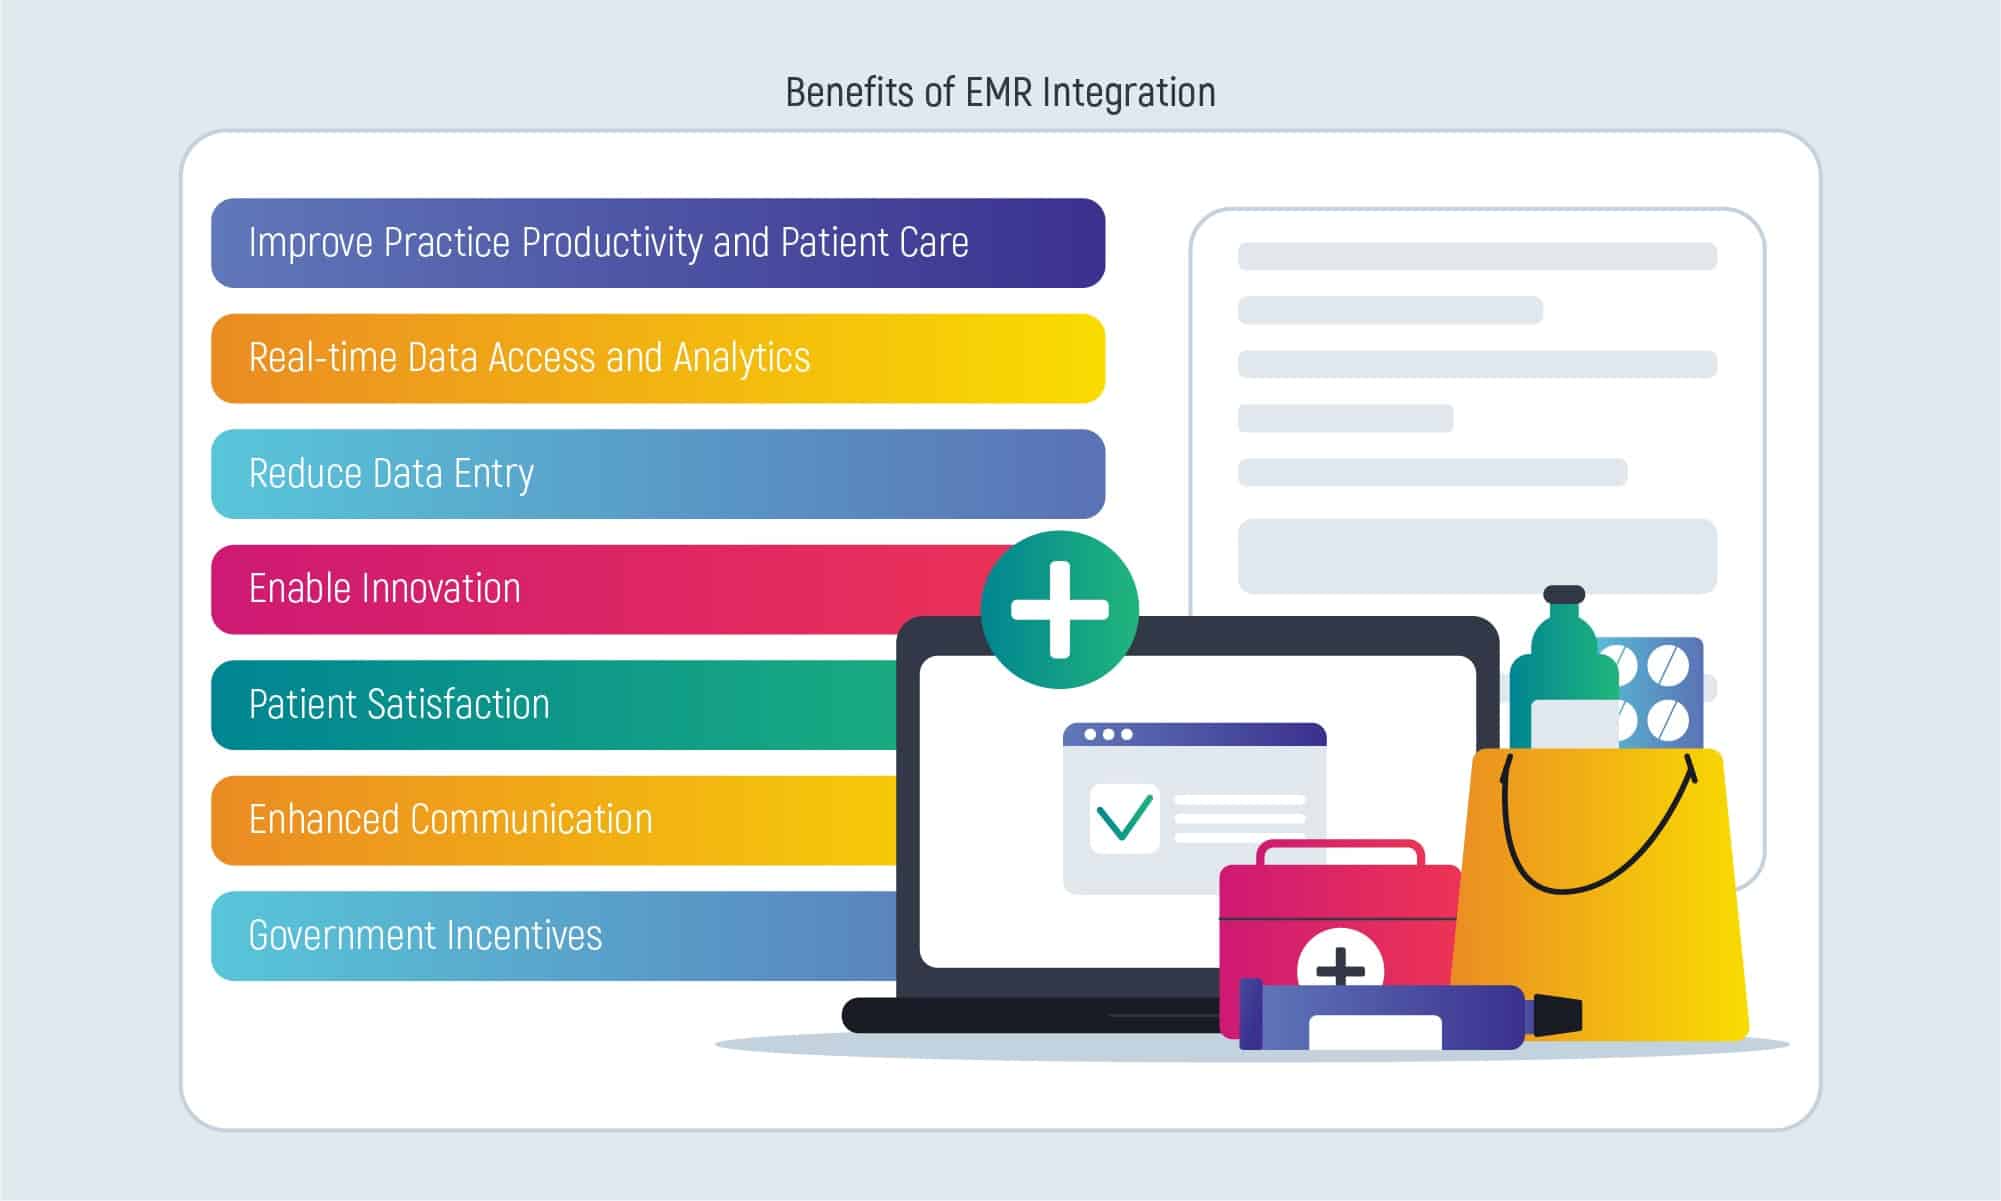 Benefits of EMR Integration